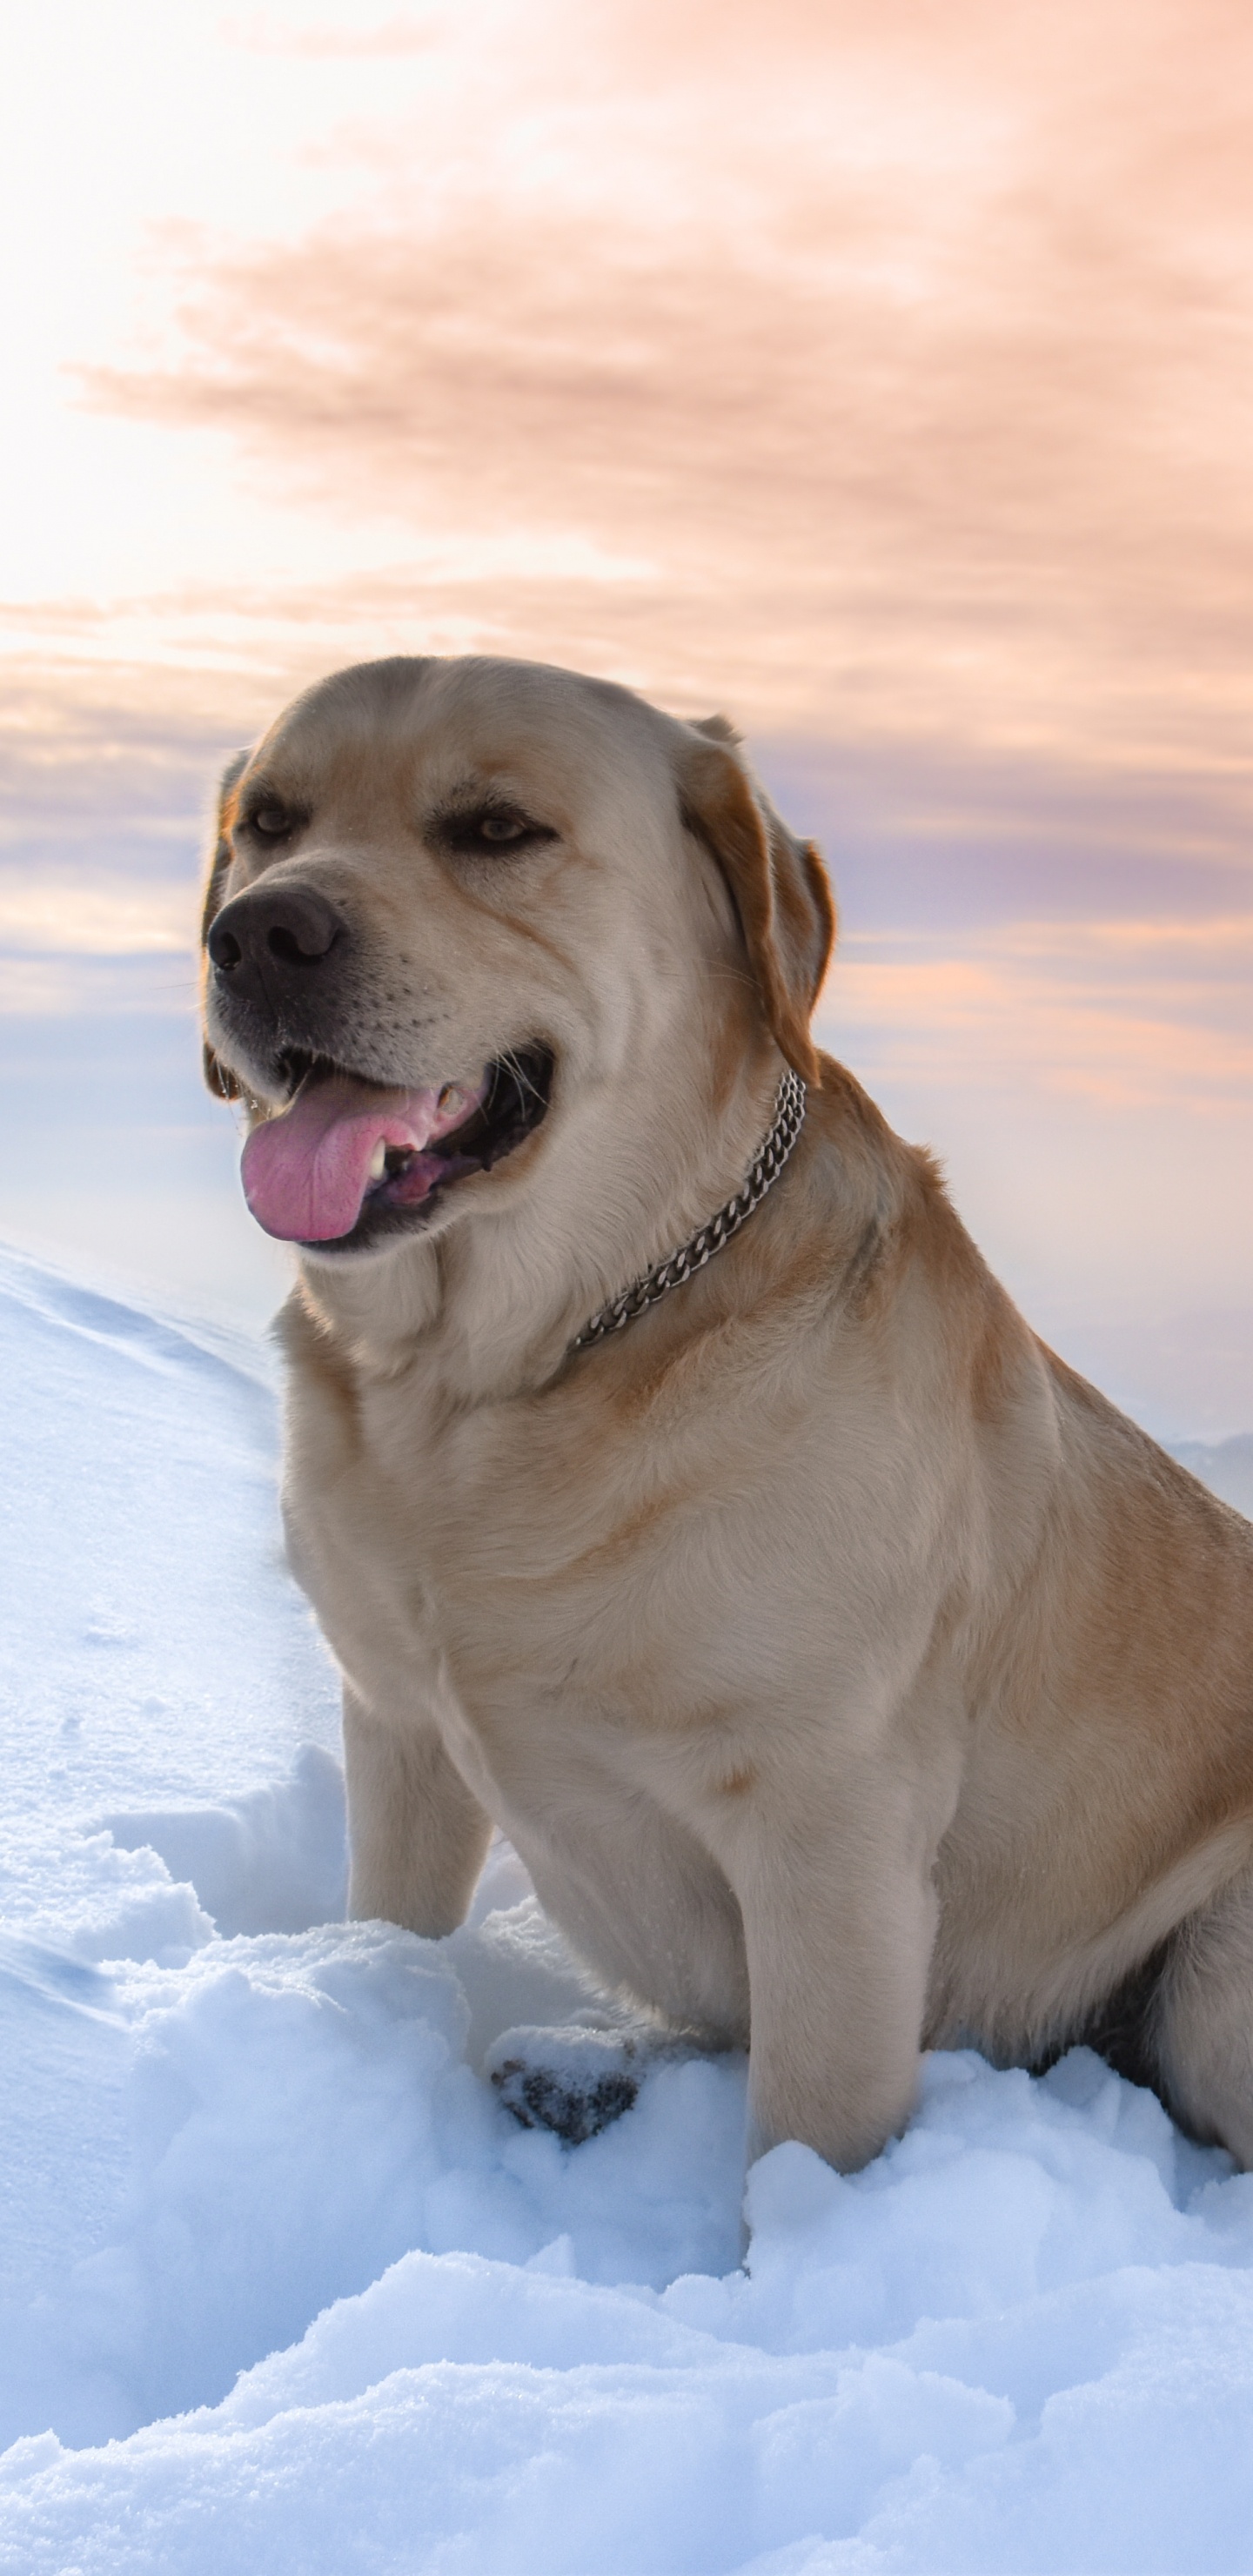 Brauner, Kurzhaariger Hund Auf Schneebedecktem Boden Tagsüber. Wallpaper in 1440x2960 Resolution